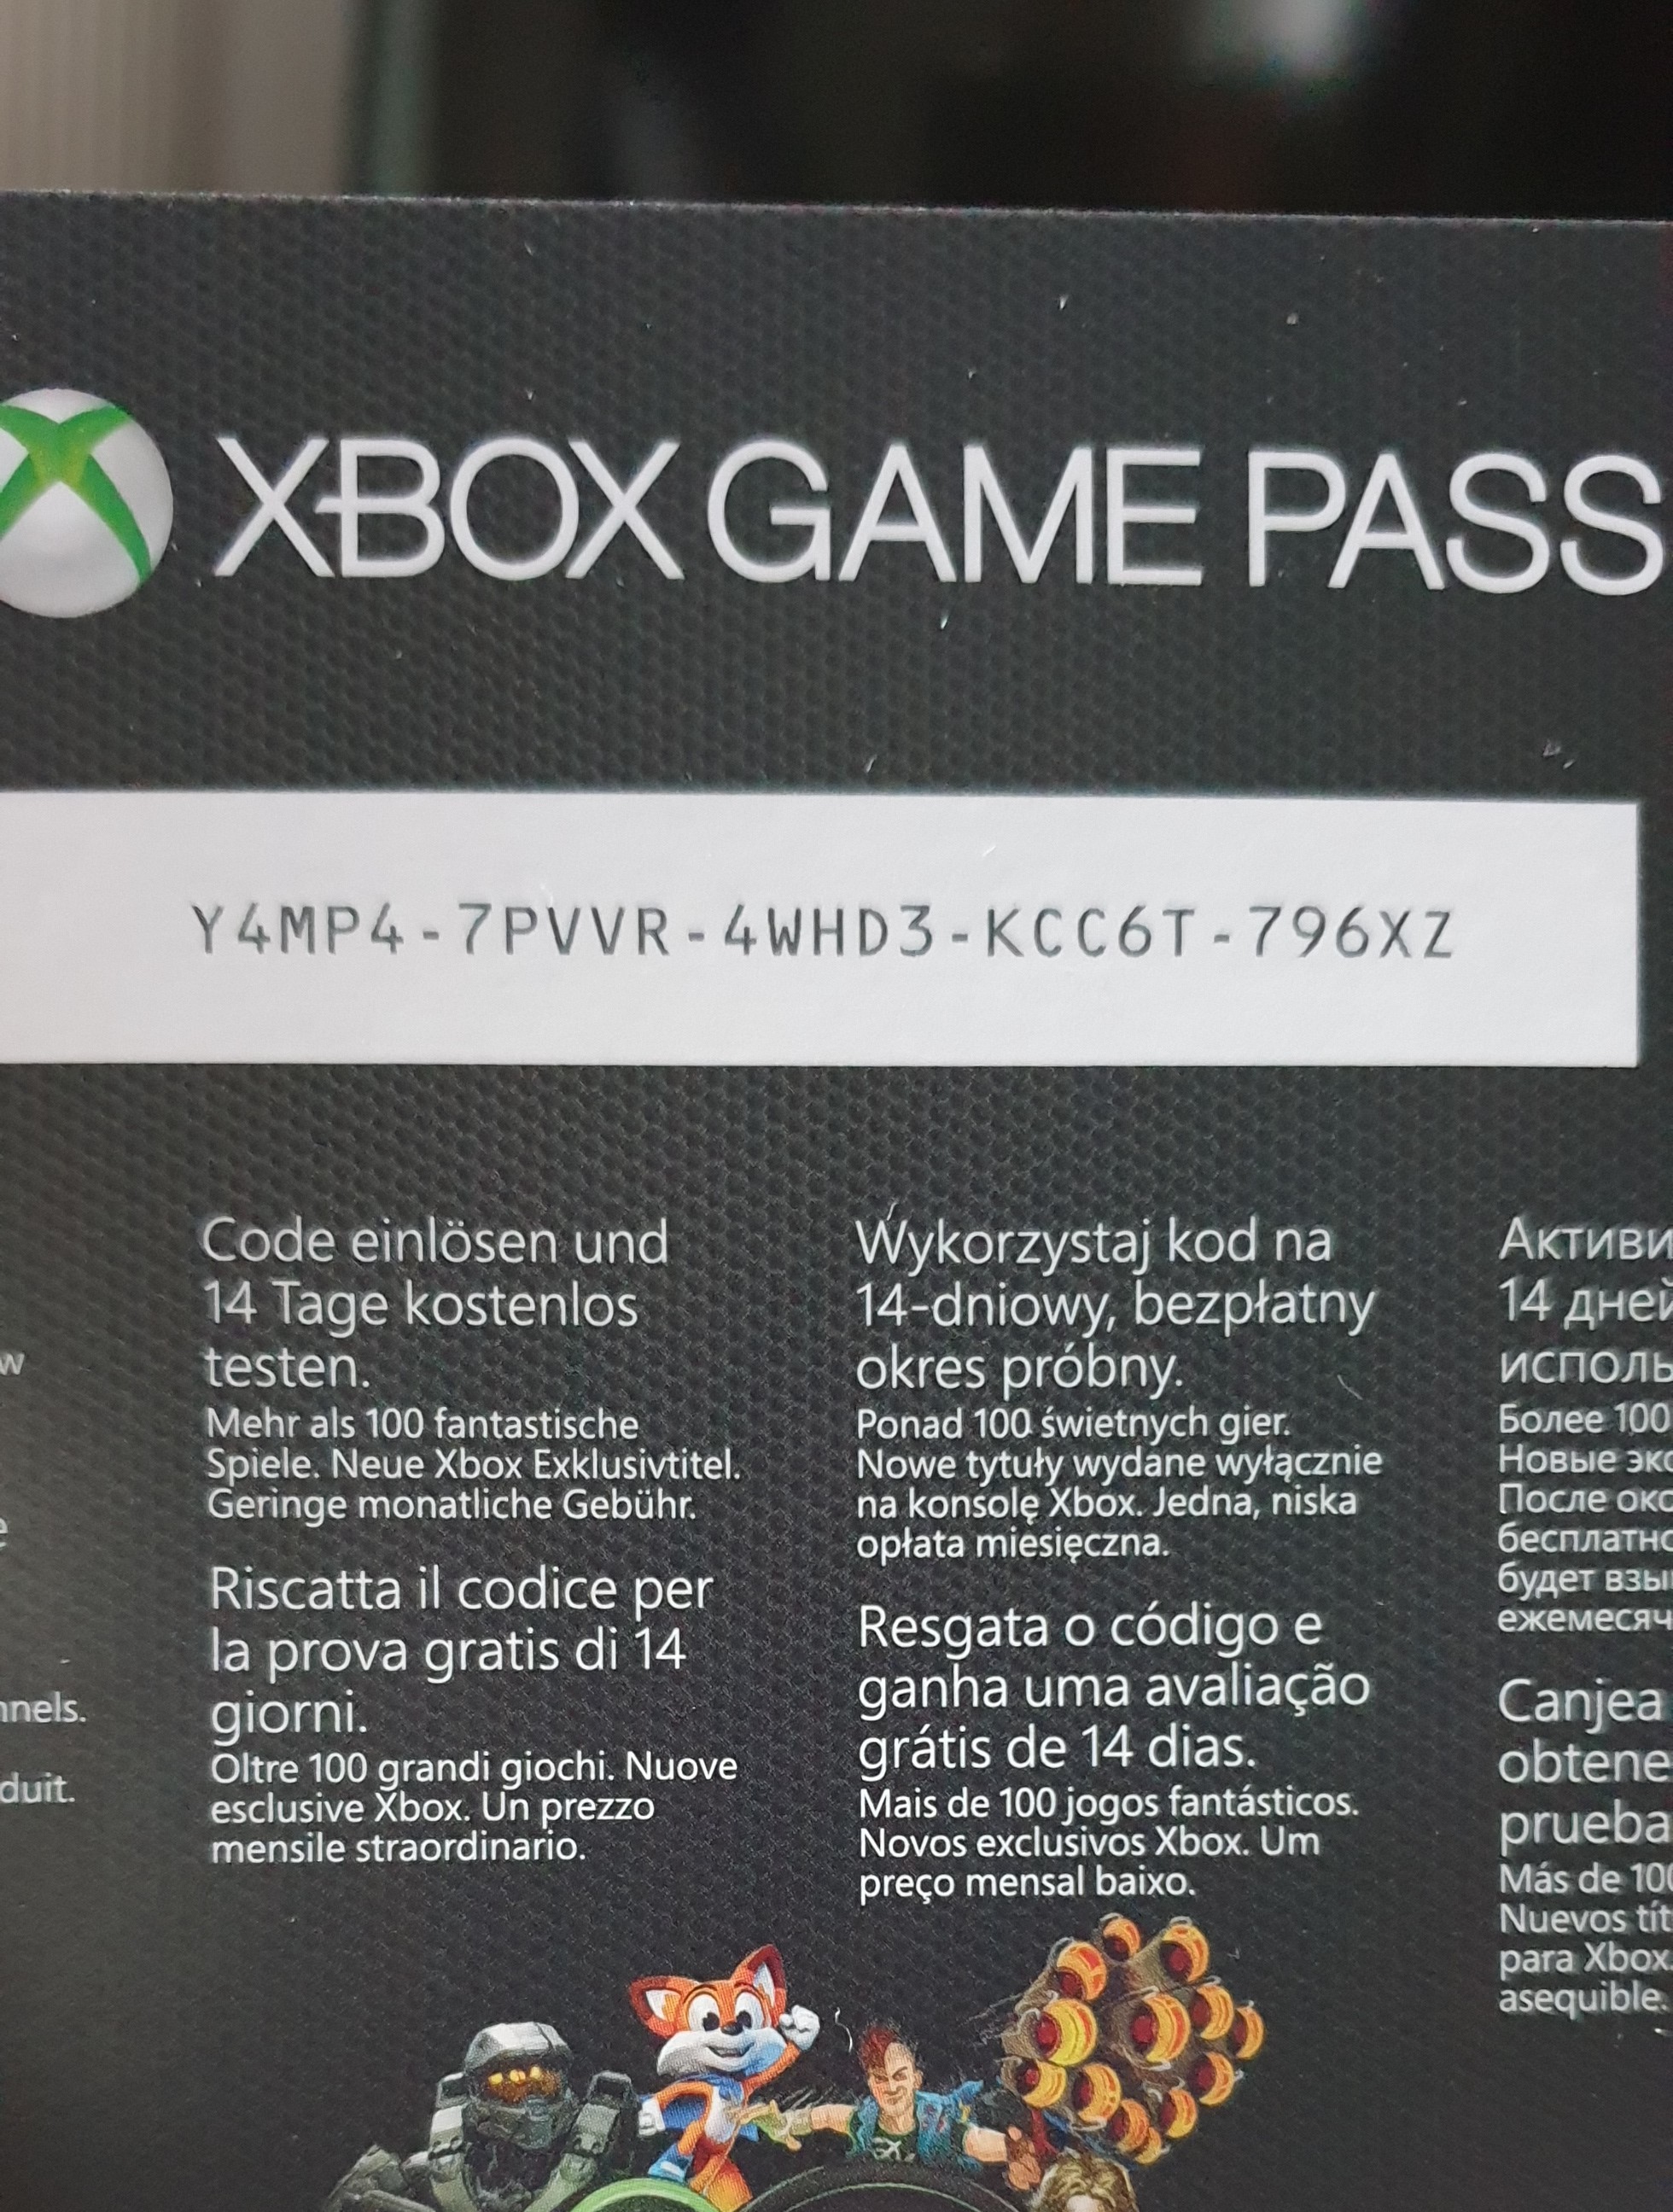 Активировать подписку xbox game. Xbox Live Gold Xbox 360 промокод. Коды на хбокс гейм пасс. Код для Xbox one. Код активации игр Xbox.